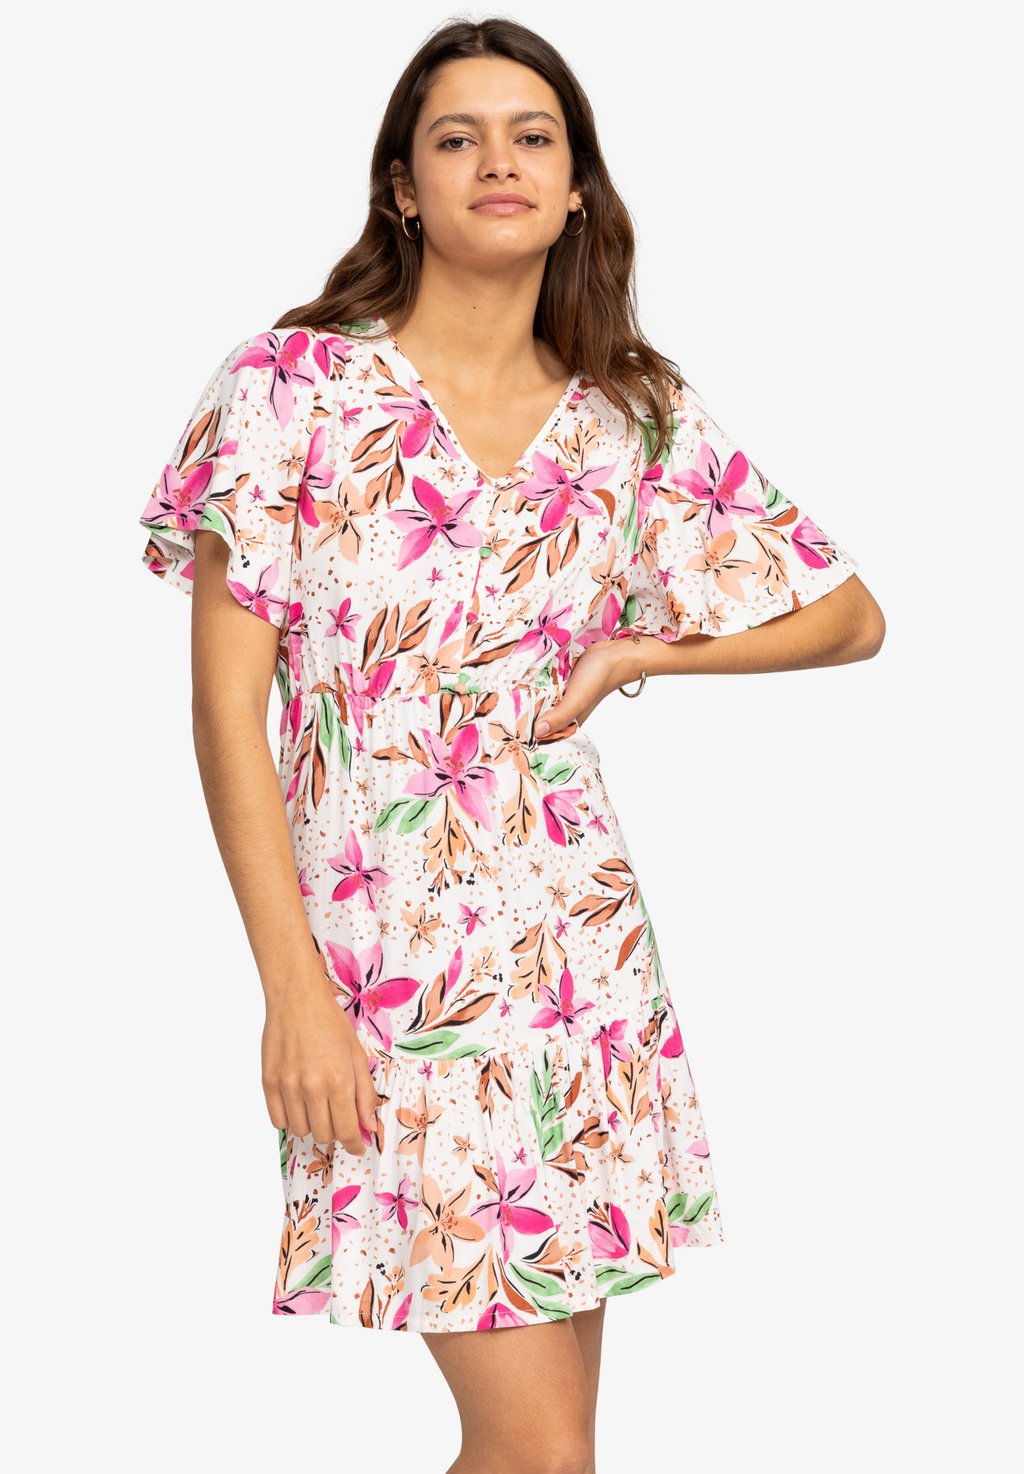 Дневное платье SEA SYMPHONY Roxy, цвет snow white happy tropical